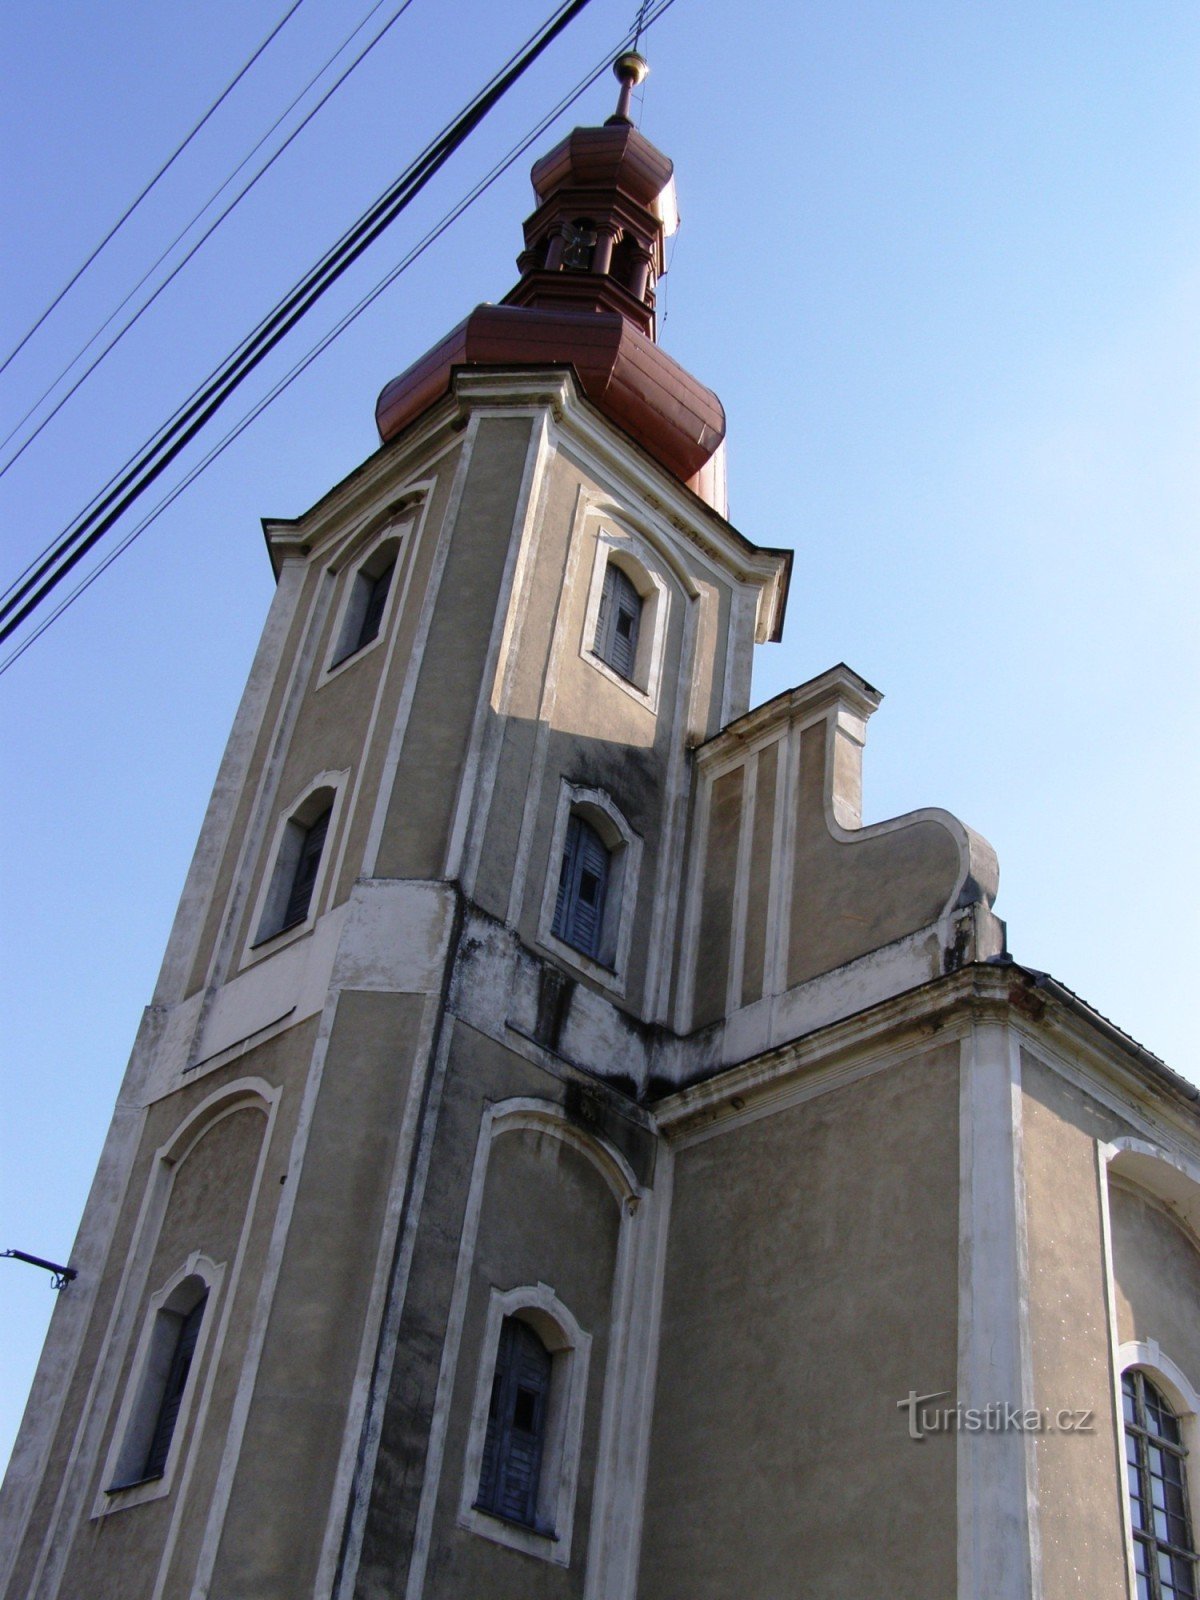 Domašov - Nhà thờ St. Tomas